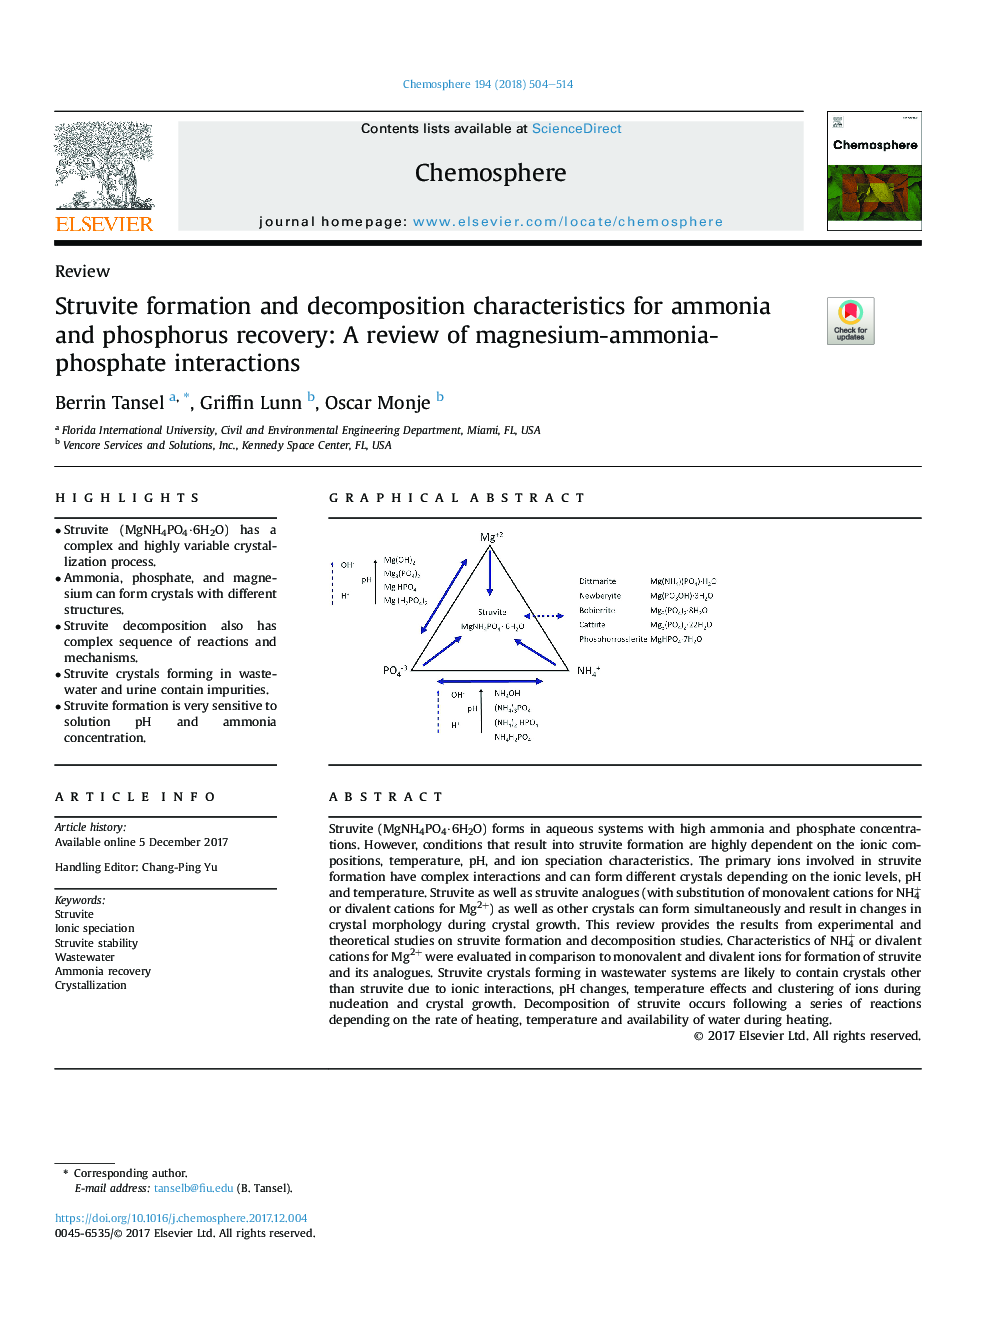 خصوصیات تشکیل و تجزیه استرویت برای بازیابی آمونیاک و فسفر: بررسی تجربیات منیزیم-آمونیاک-فسفات 